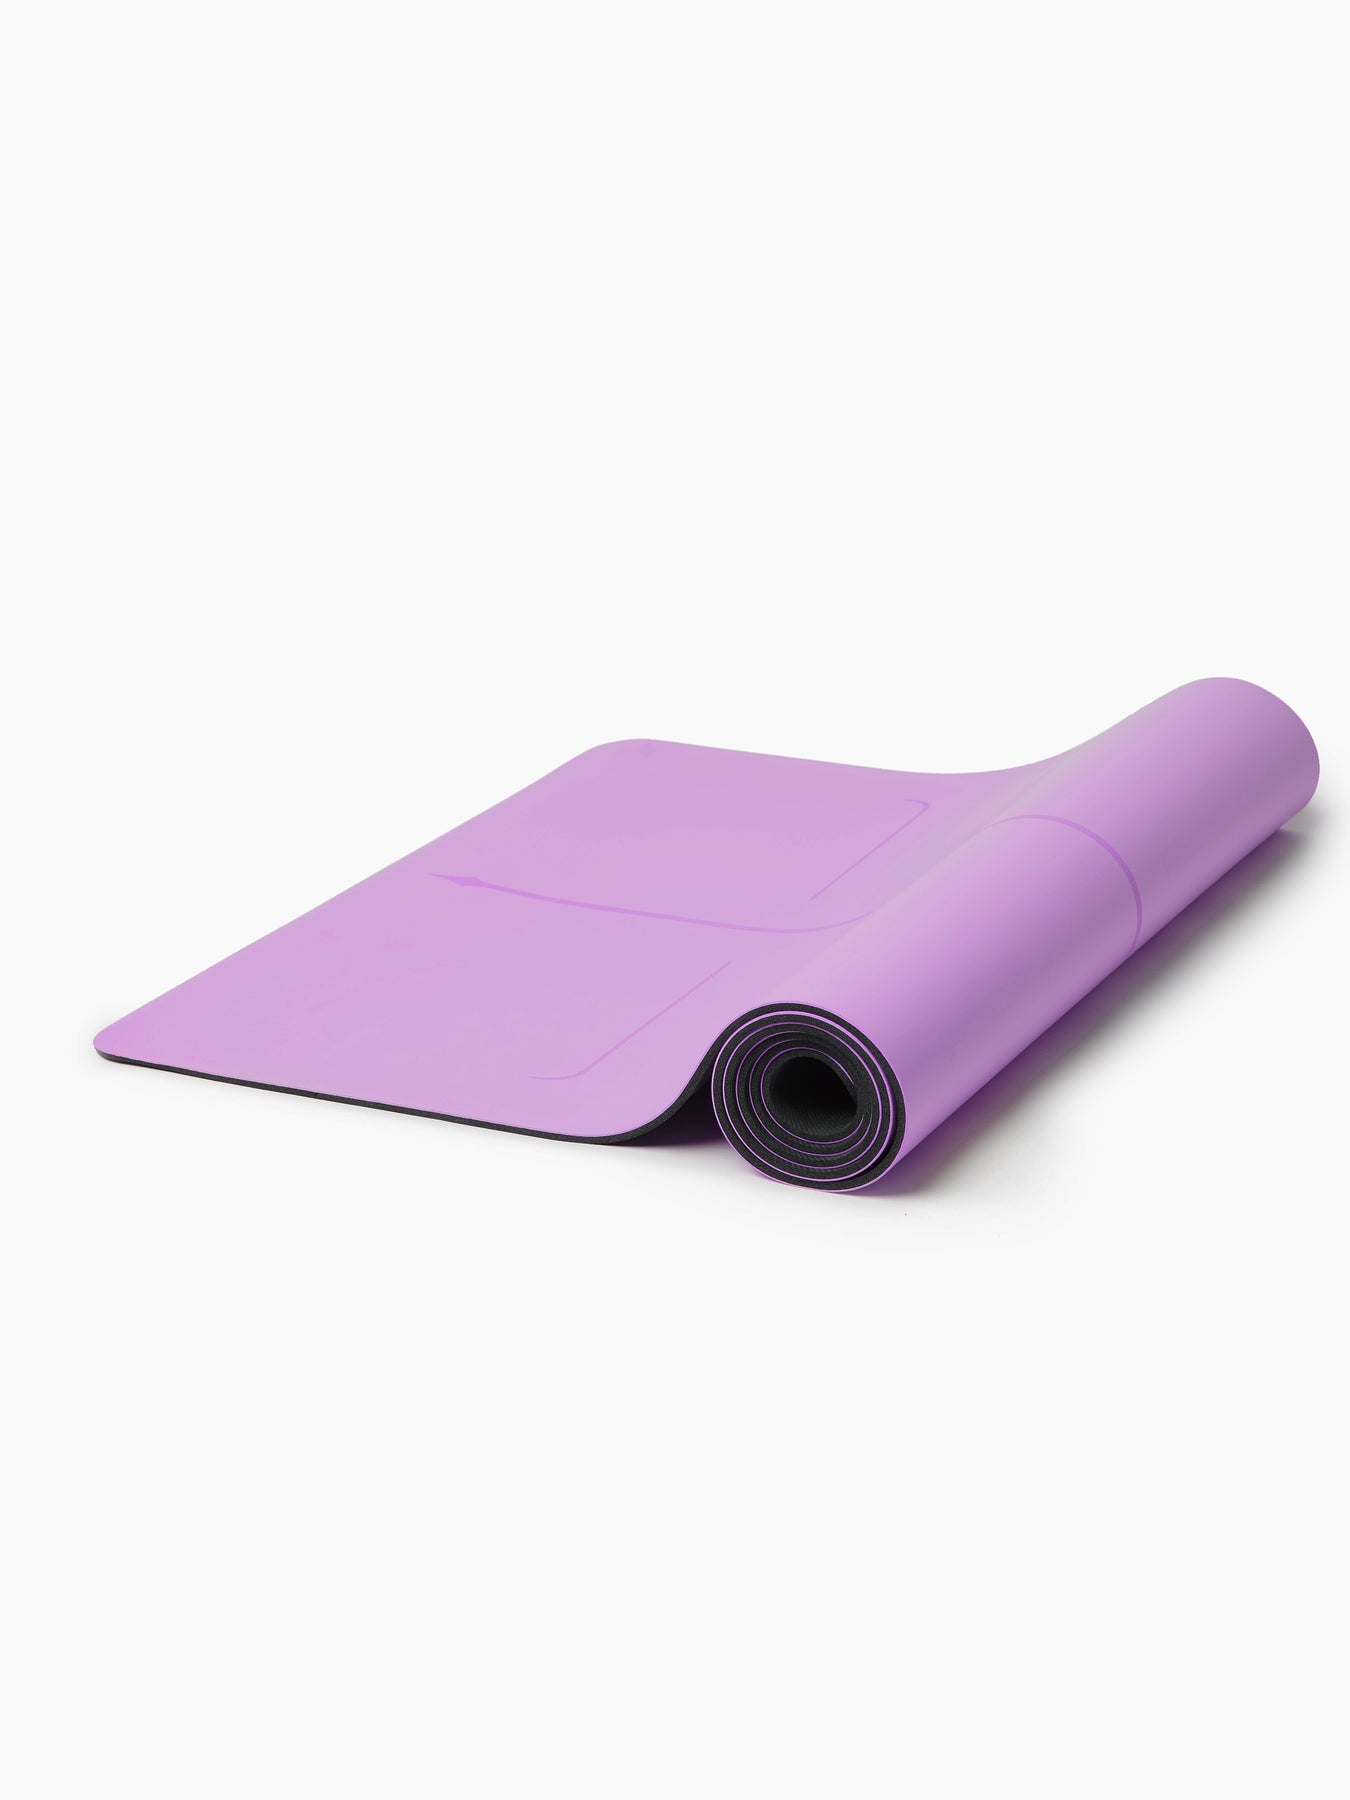 Yoga Mat 5mm - Purple